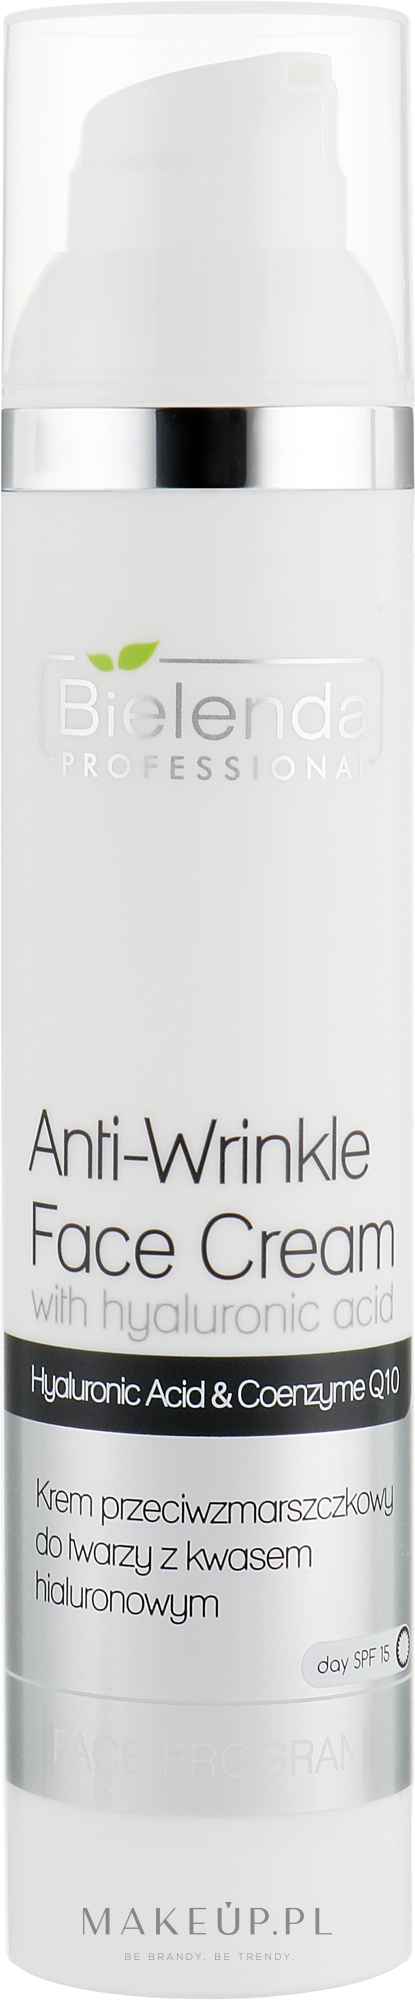 Krem przeciwzmarszczkowy do twarzy z kwasem hialuronowym - Bielenda Professional Anti-Wrinkle Face Cream — Zdjęcie 100 ml